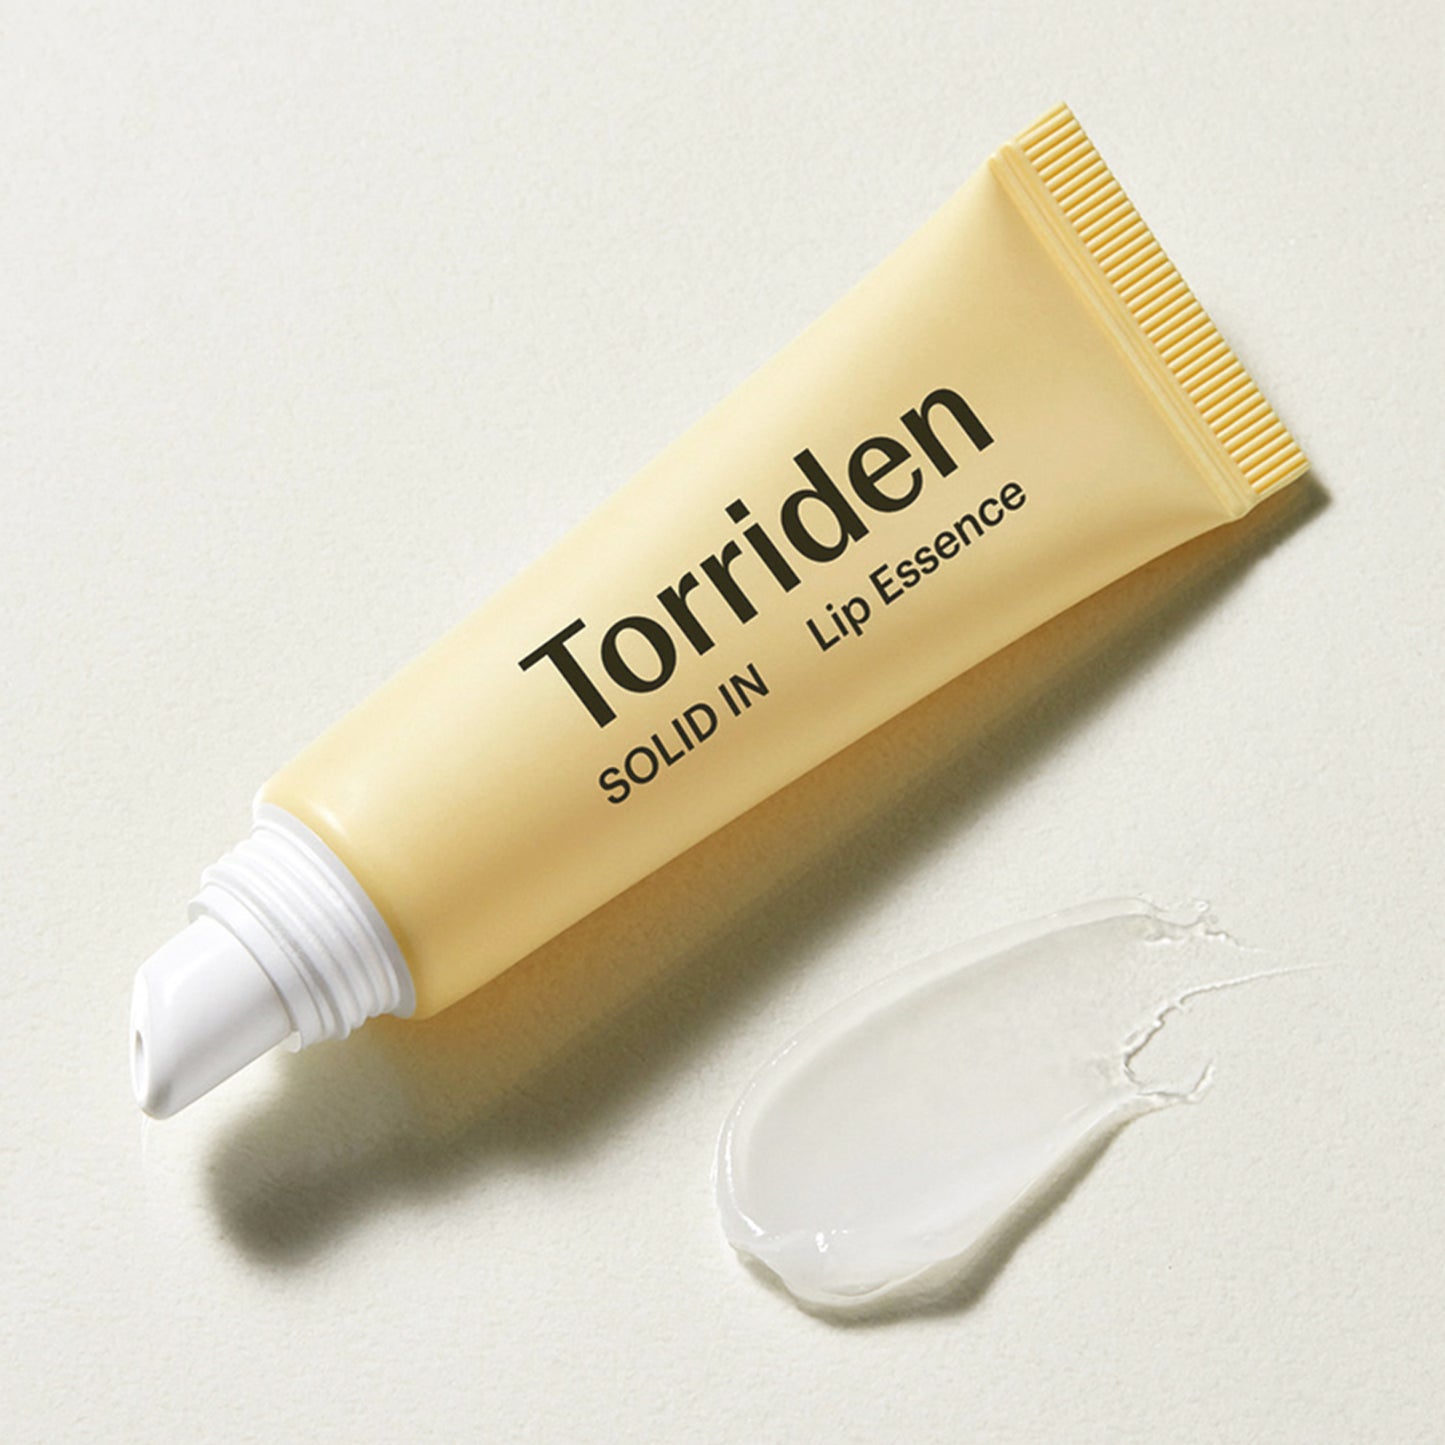 TORRIDEN SOLID-IN Lip Essence (11ml)